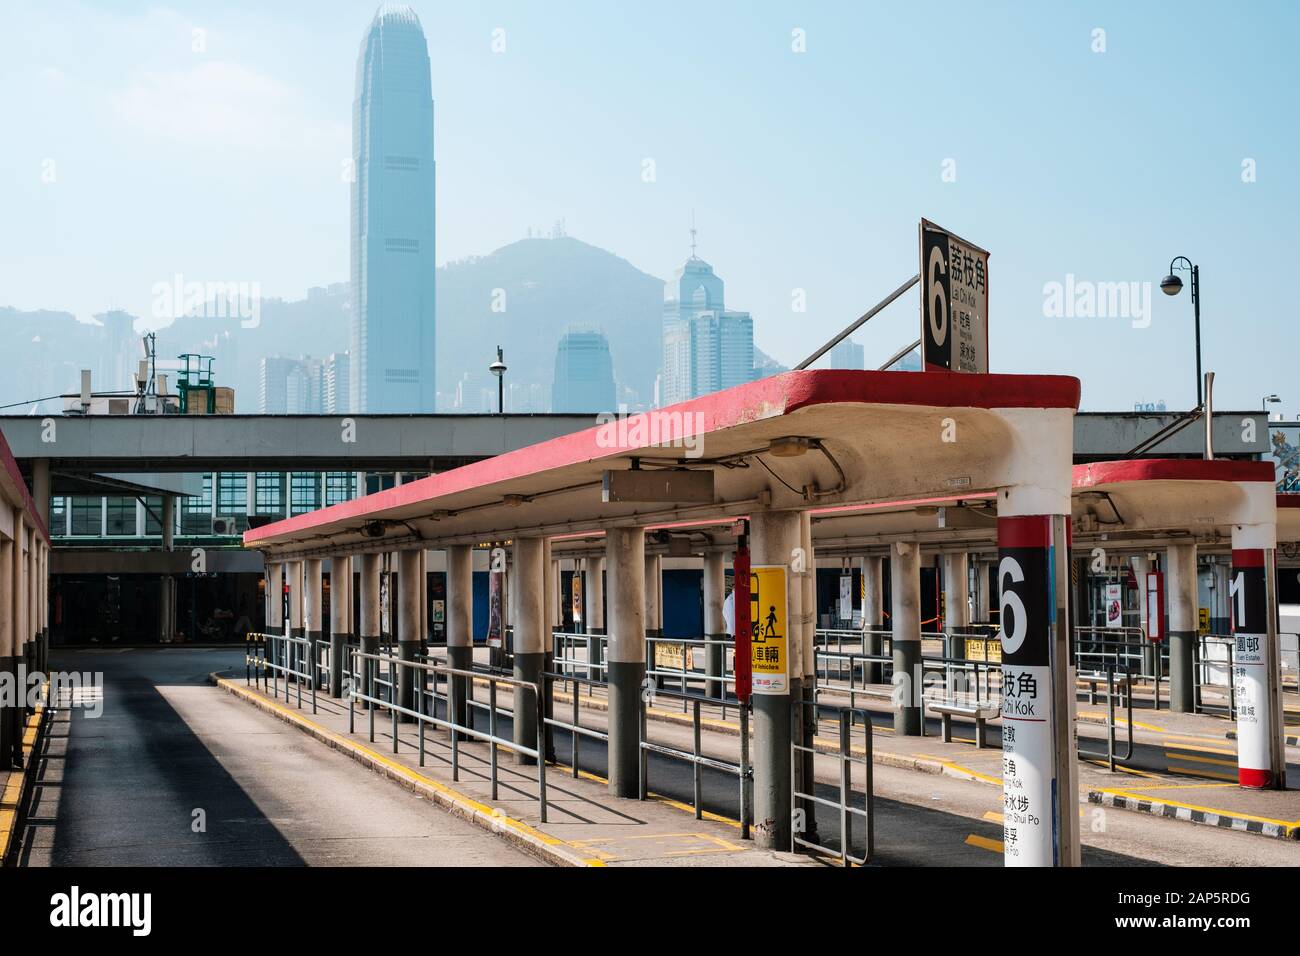 HongKong, China - November, 2019: Tsim Sha Tsui Bus terminal in Hong Kong. Stock Photo